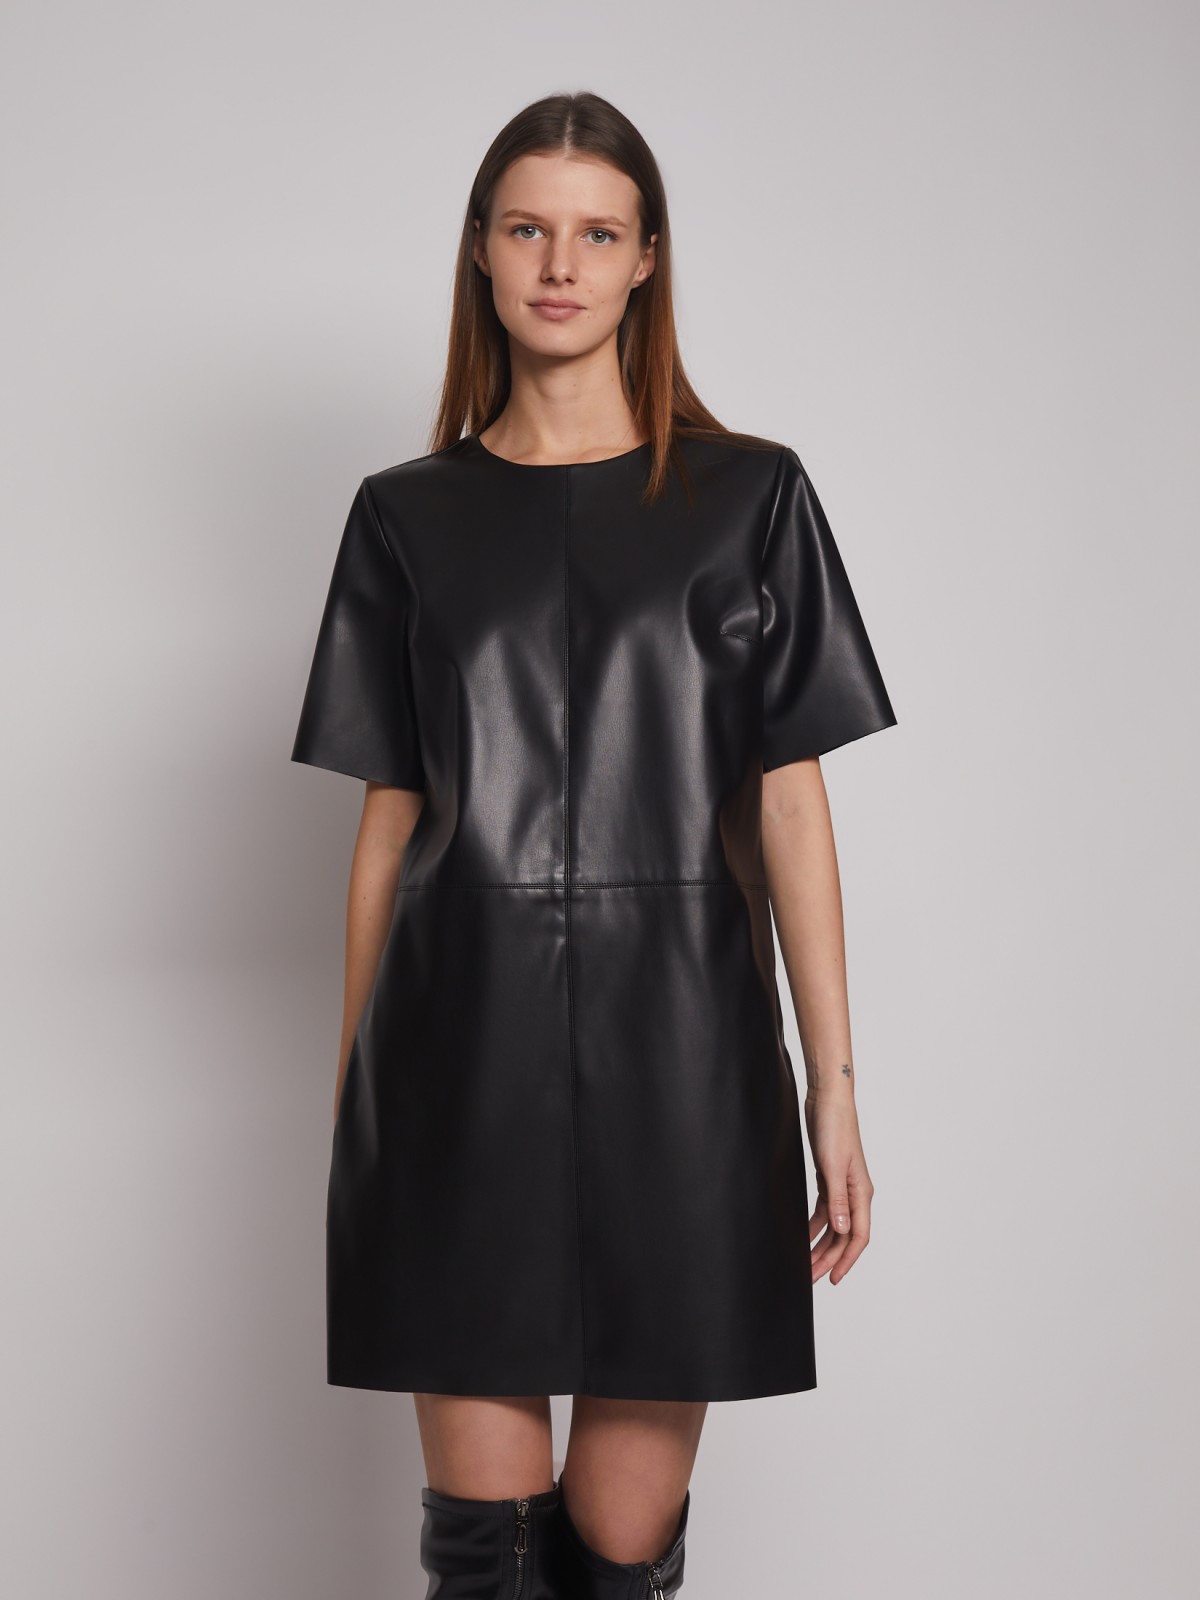 Платье-футболка из экокожи zolla 023128230263, цвет черный, размер S - фото 2